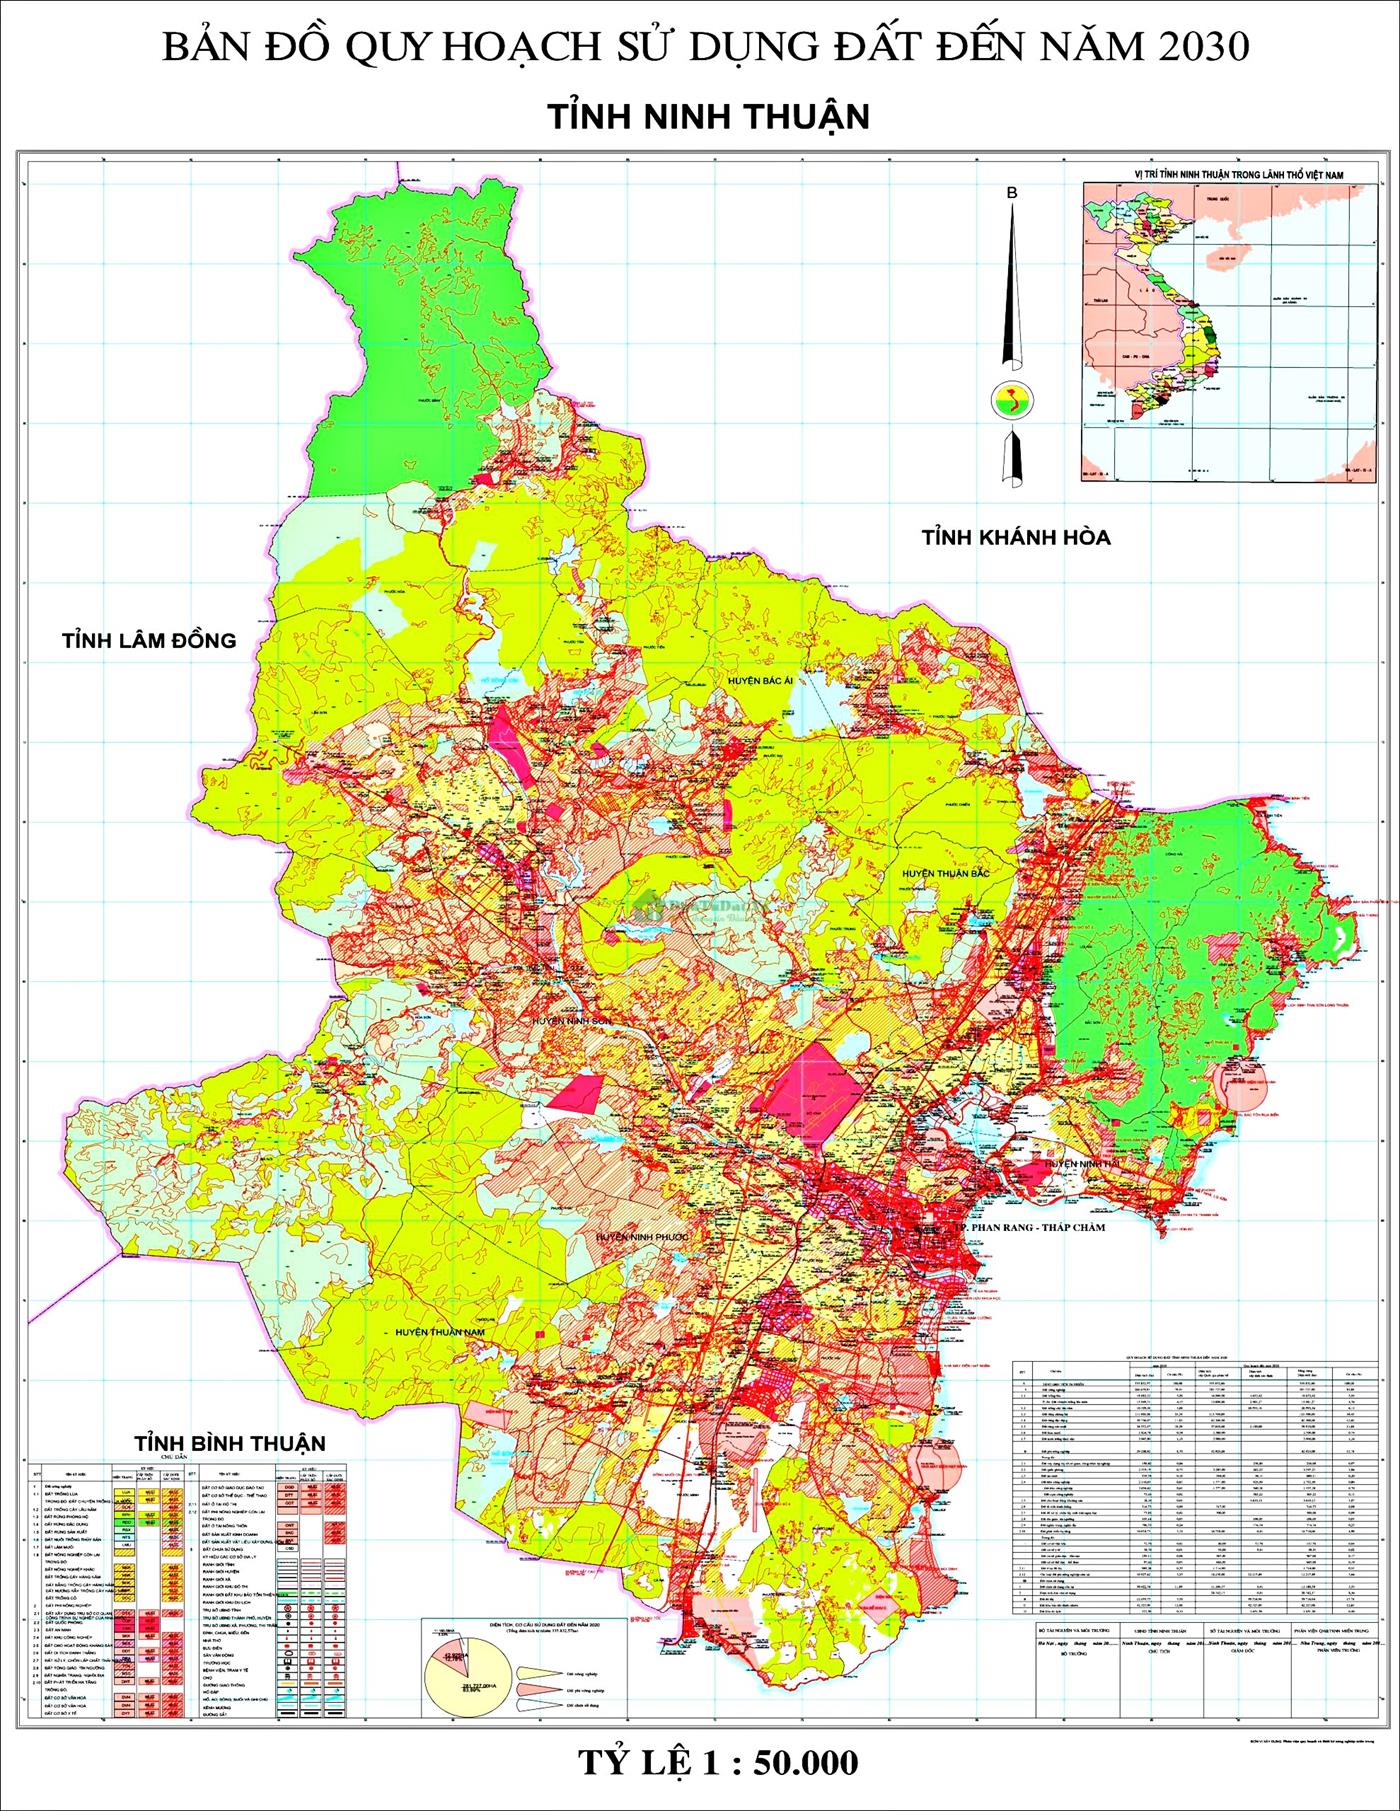 Bản đồ quy hoạch tỉnh Ninh Thuận chi tiết nhất